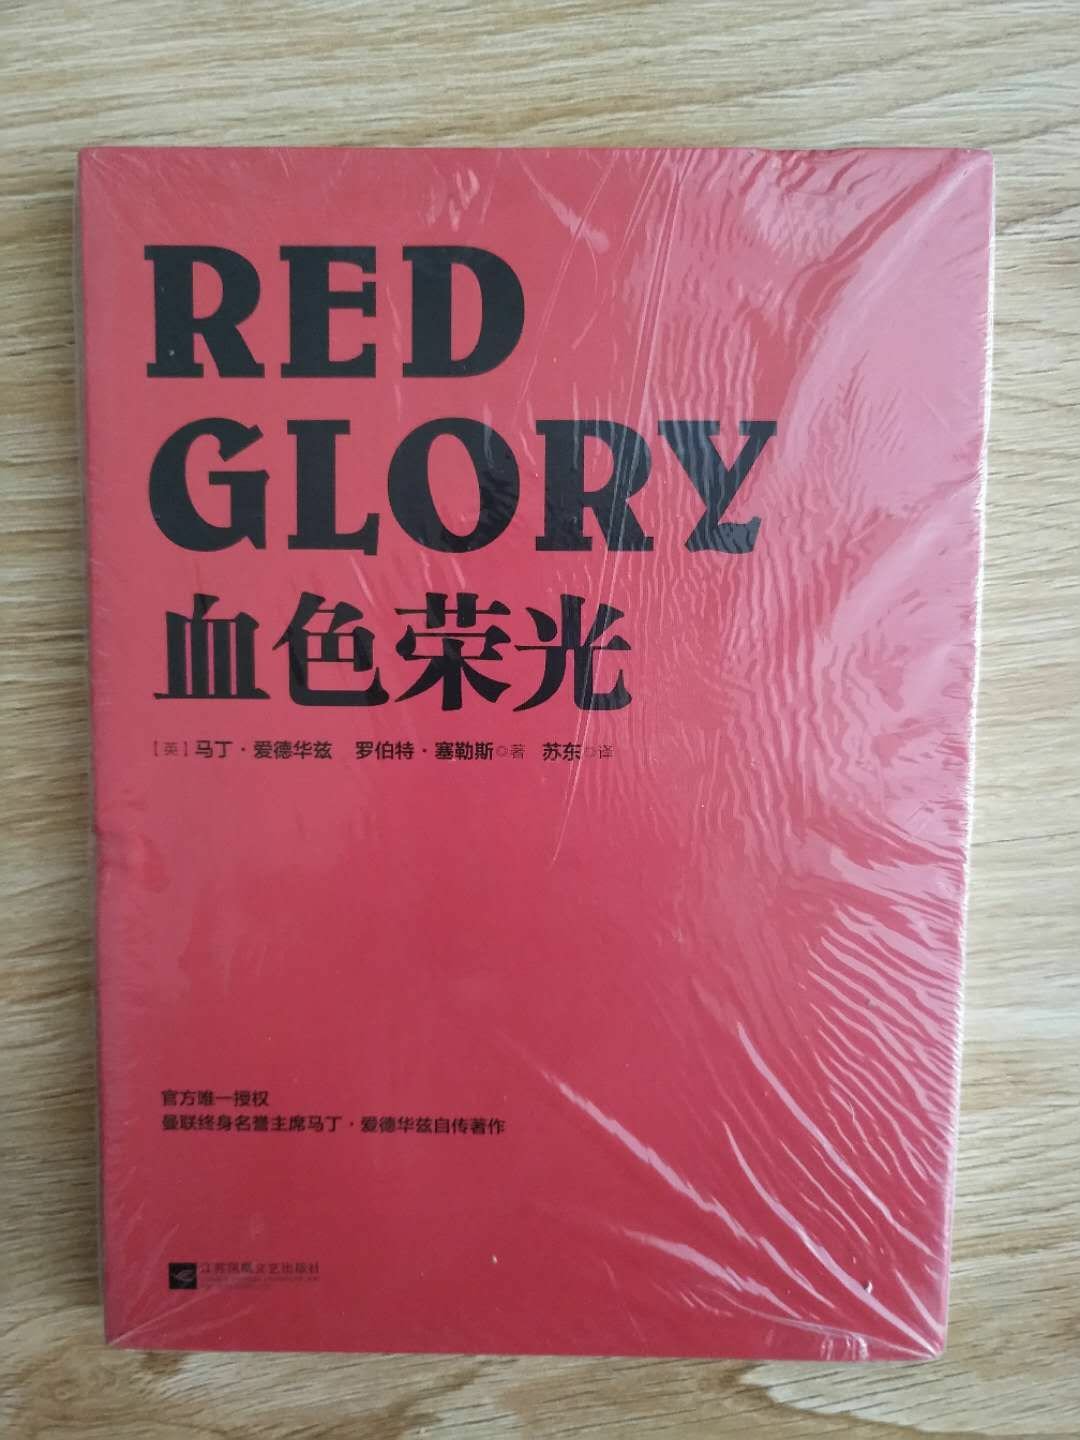 又一本红魔死忠必收藏的书！！！由苏东老师翻译，支持下！！！